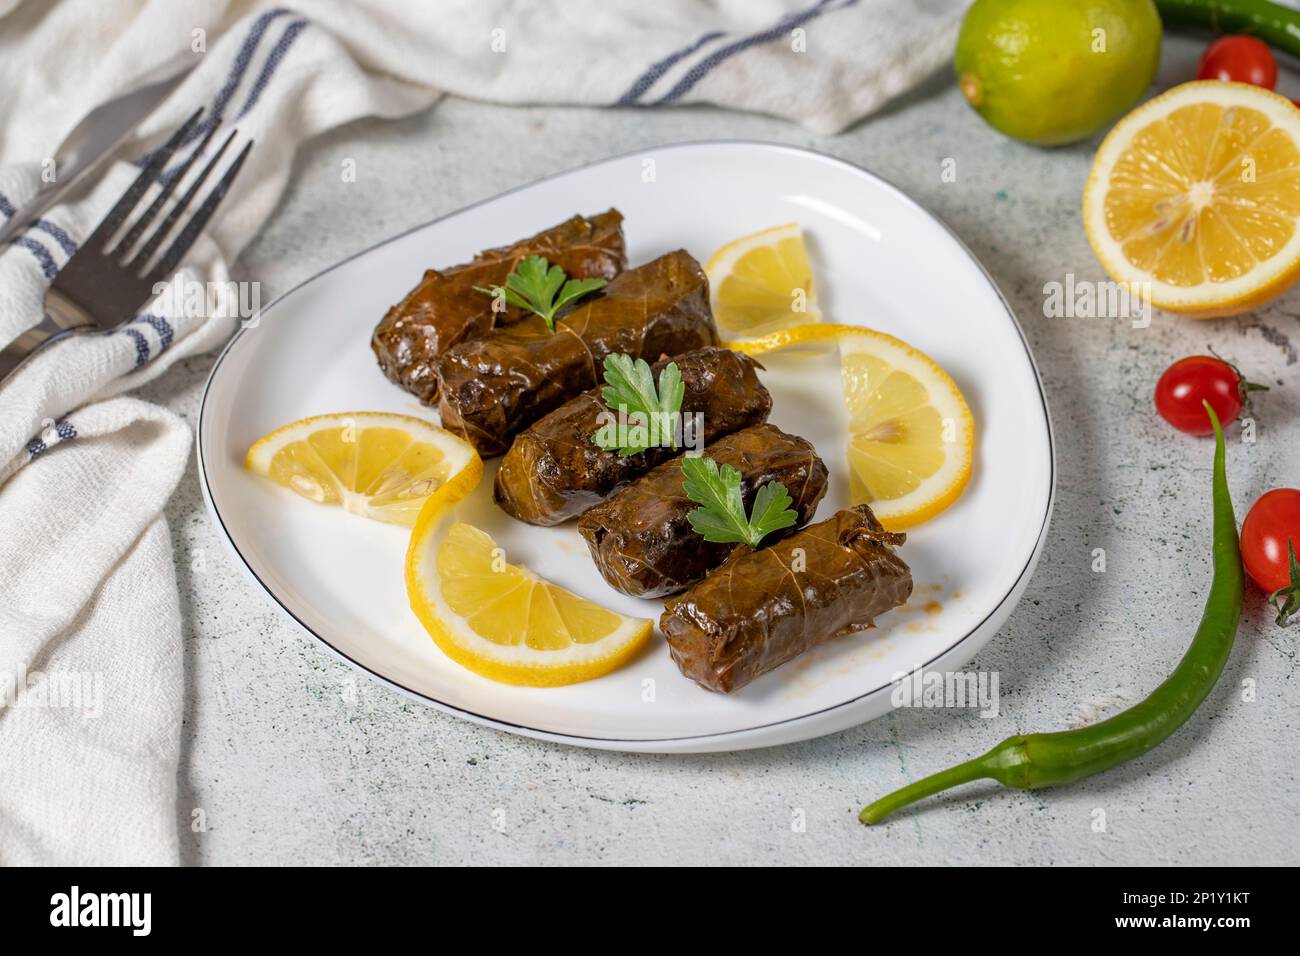 Emballage de feuilles ou dolmades apéritif une cuisine méditerranéenne de feuilles de vigne farcies. Yaprak sarma. Variétés de hors-d'œuvre turques Banque D'Images